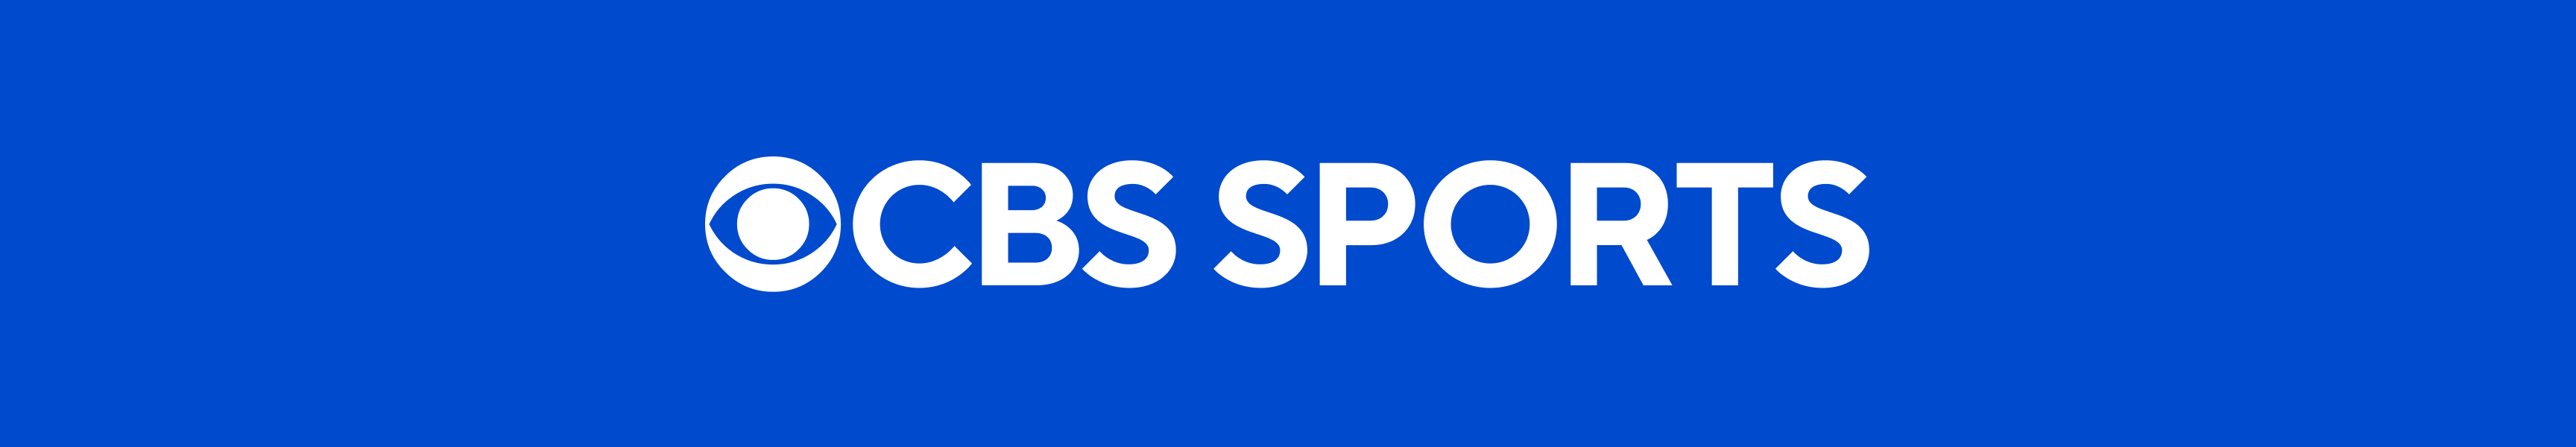 Sombreros deportivos de CBS